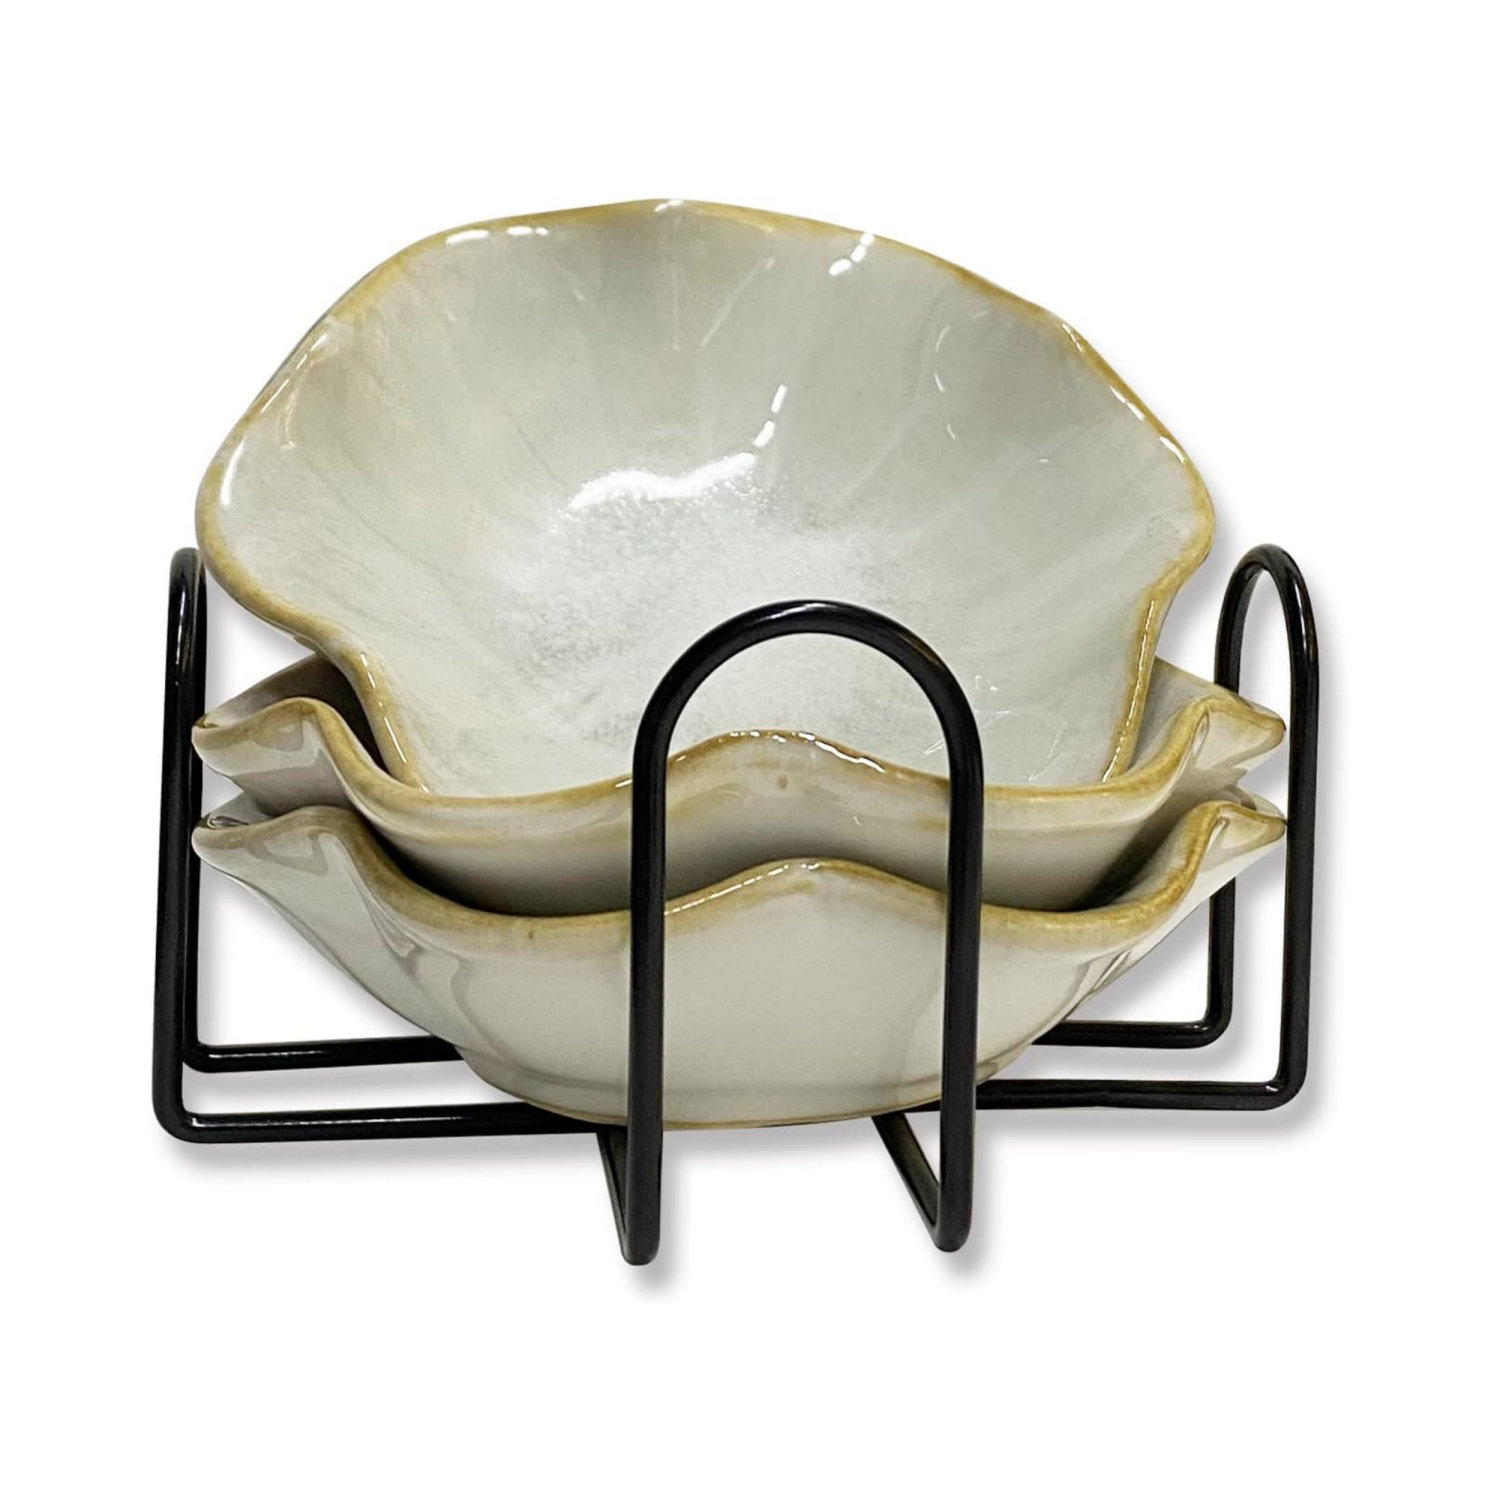 Ceramic / Porcelain Novelty Spoon Rest